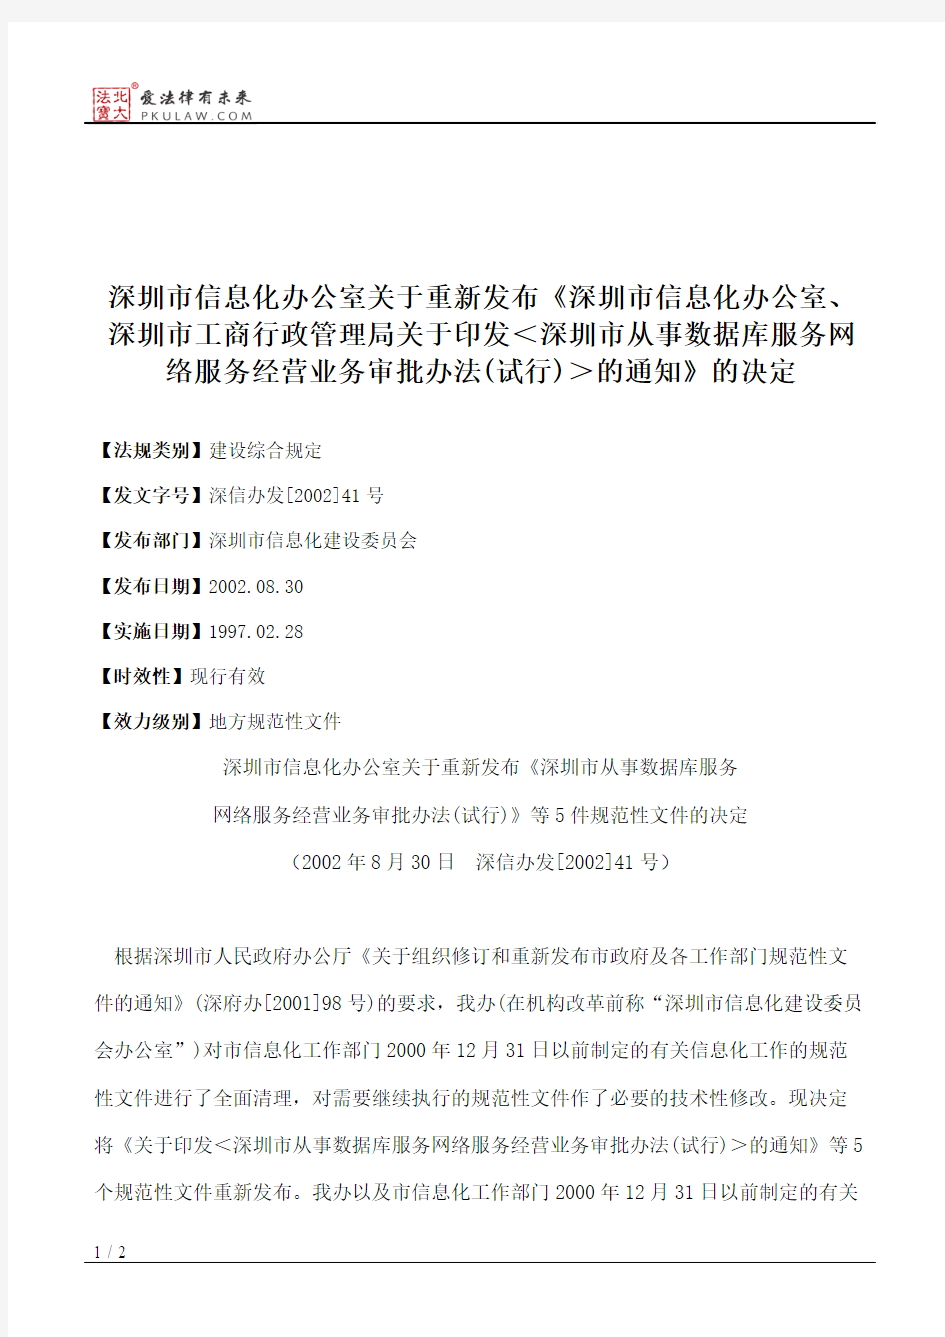 深圳市信息化办公室关于重新发布《深圳市信息化办公室、深圳市工